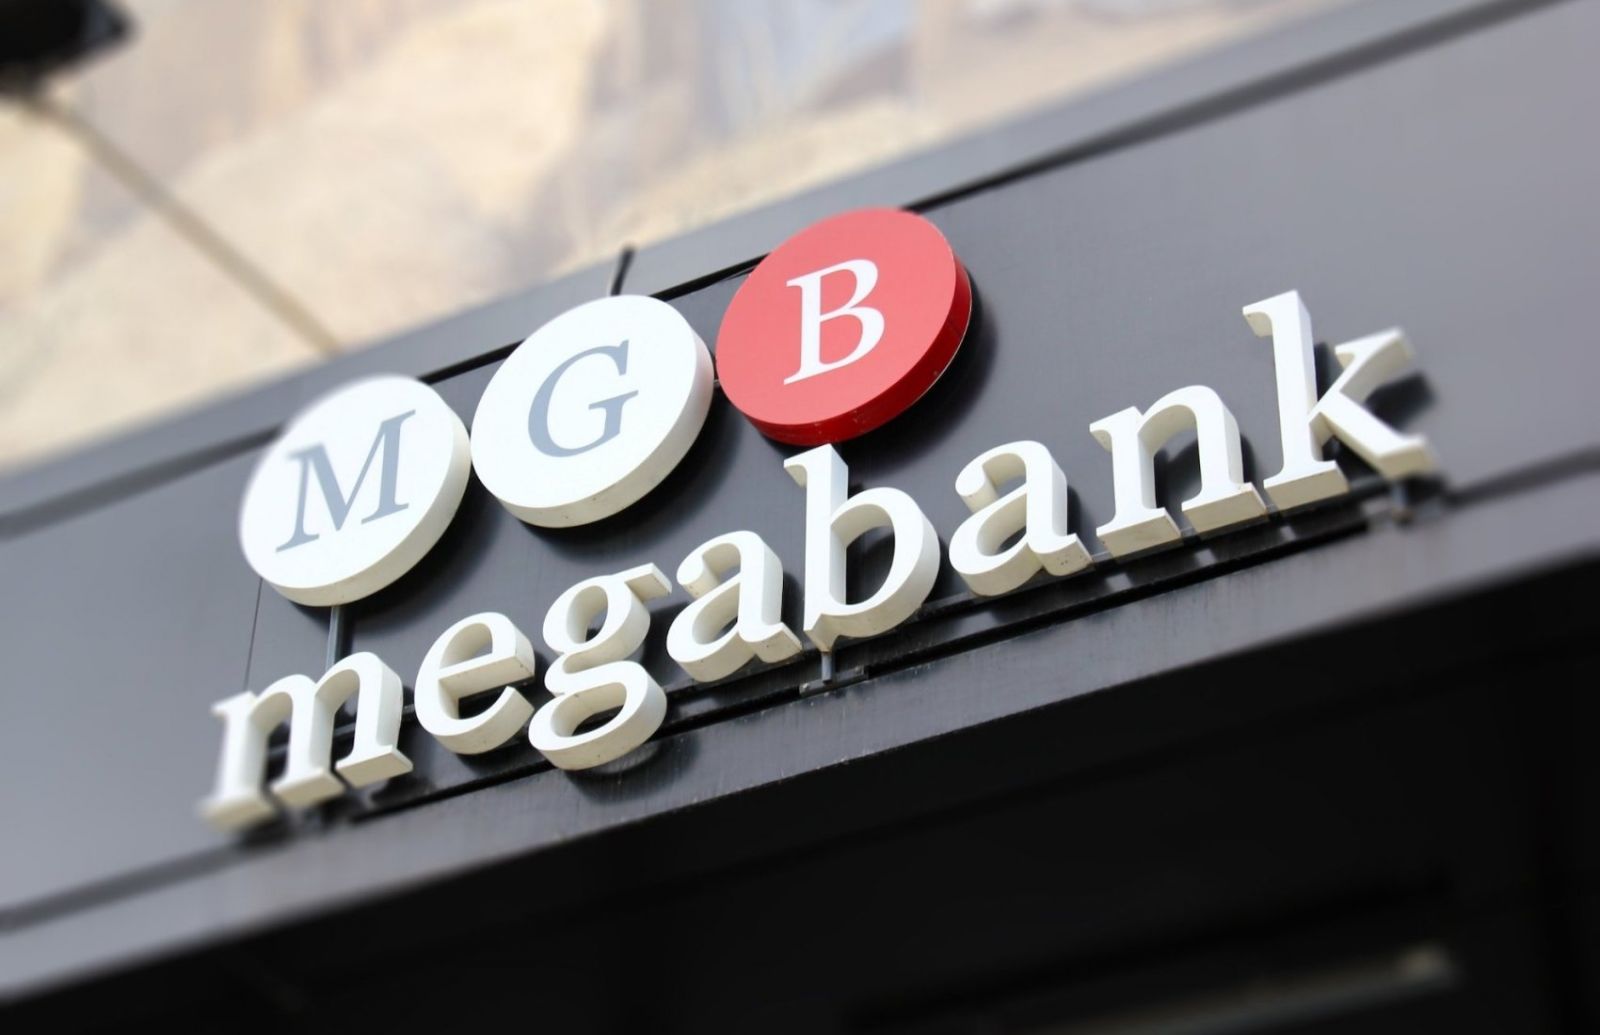 «Мегабанк» пропонується викупити за 1 грн з подальшим продажем «Укрпошті»